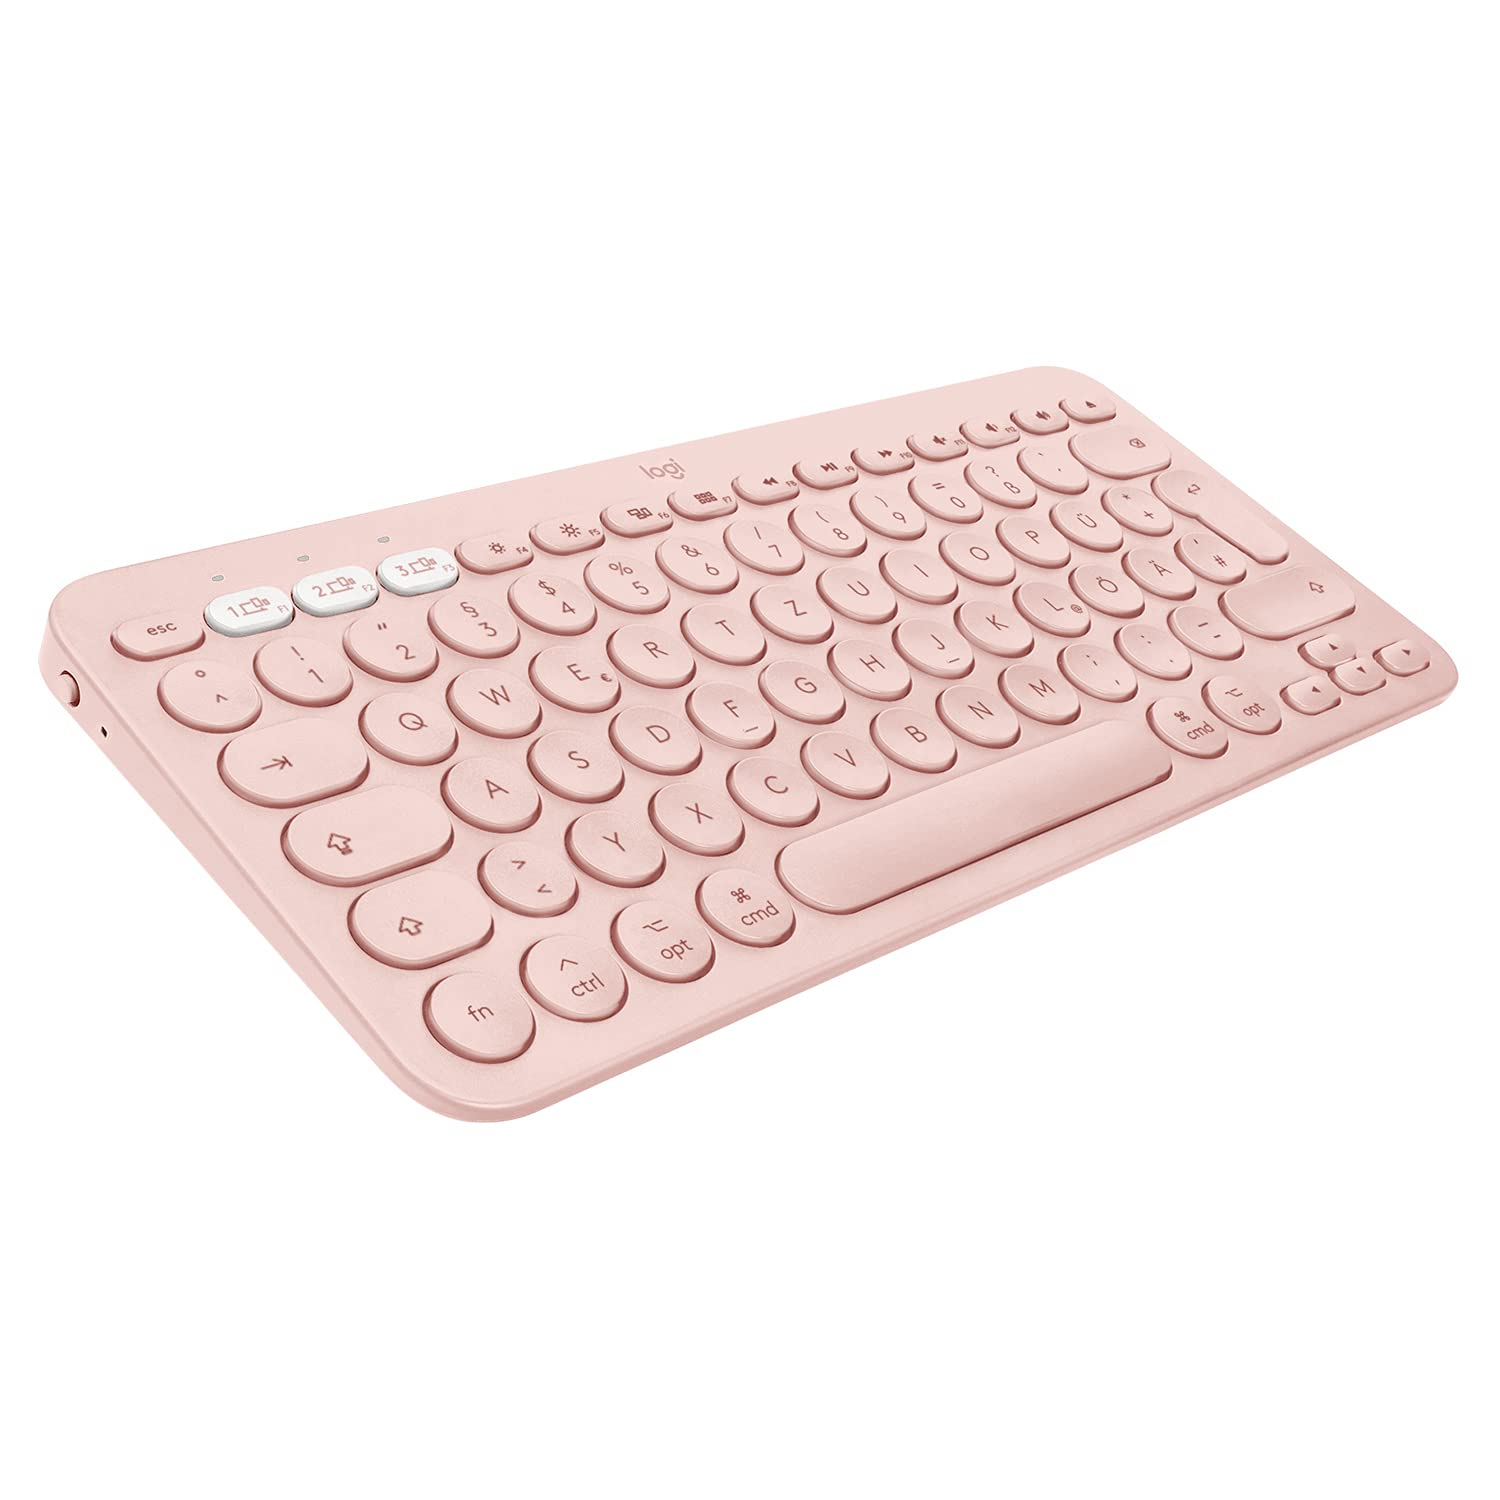 Logitech K380 Multi-Device Bluetooth Tastatur für Mac, Einfaches Umschalten zwischen bis zu 3 Geräten, Scissor-Tasten, 2 Jahre Batterie, macOS / iOS / iPadOS, Deutsches QWERTZ-Layout - Rosa